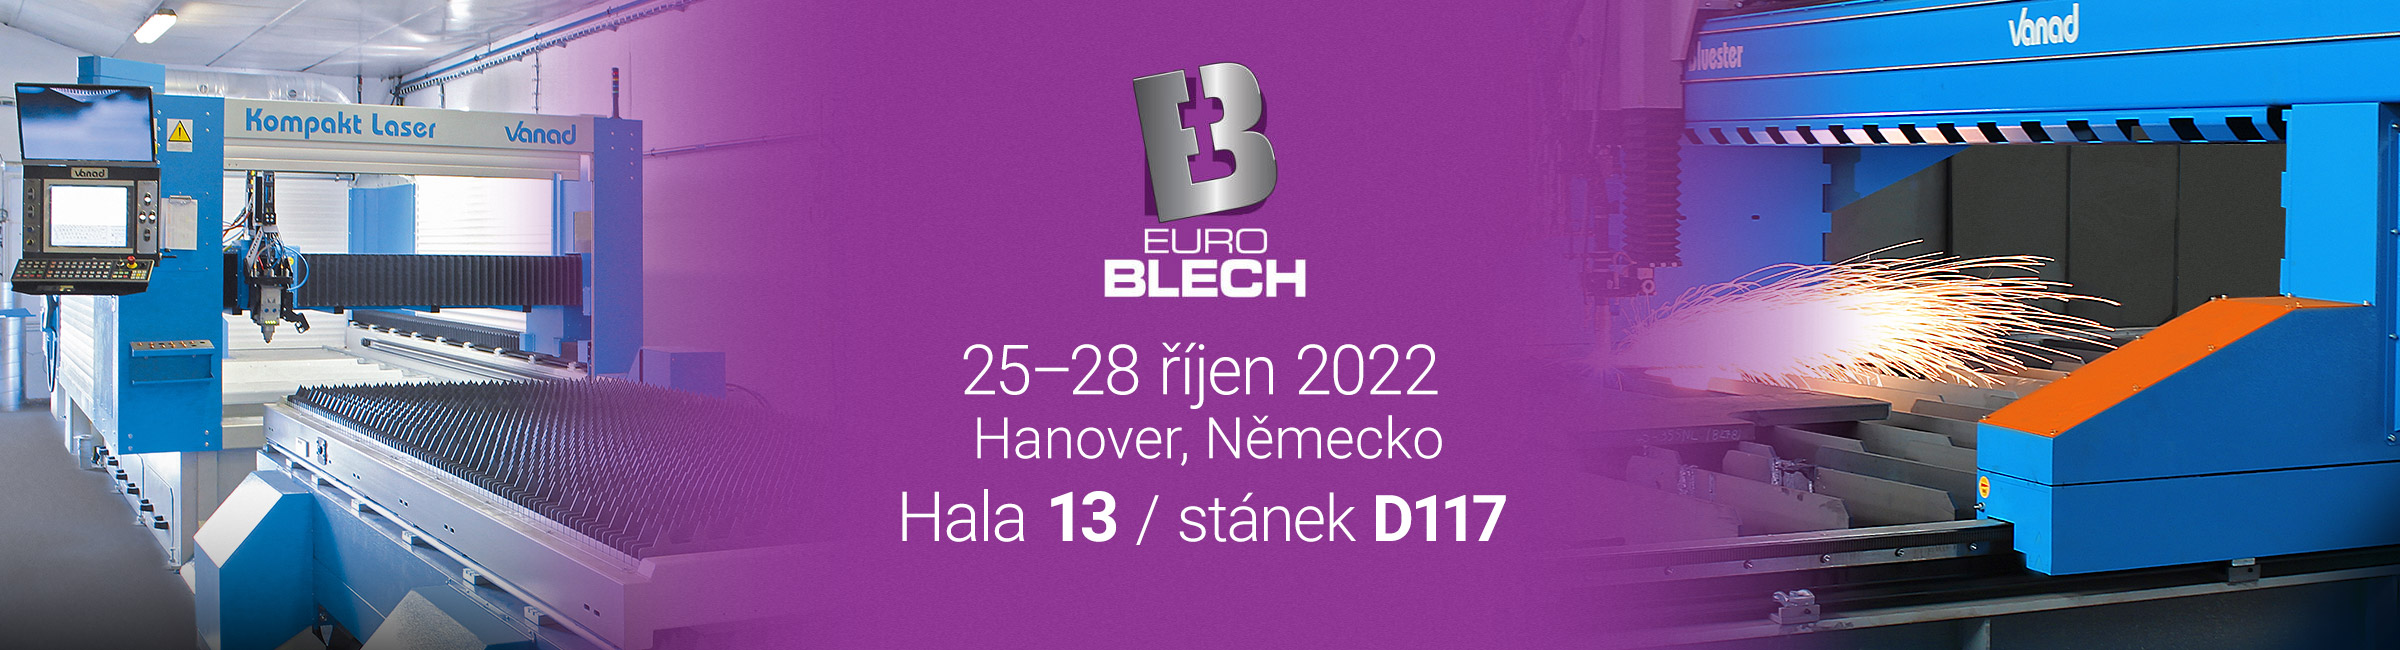 Euroblech 2022 cz